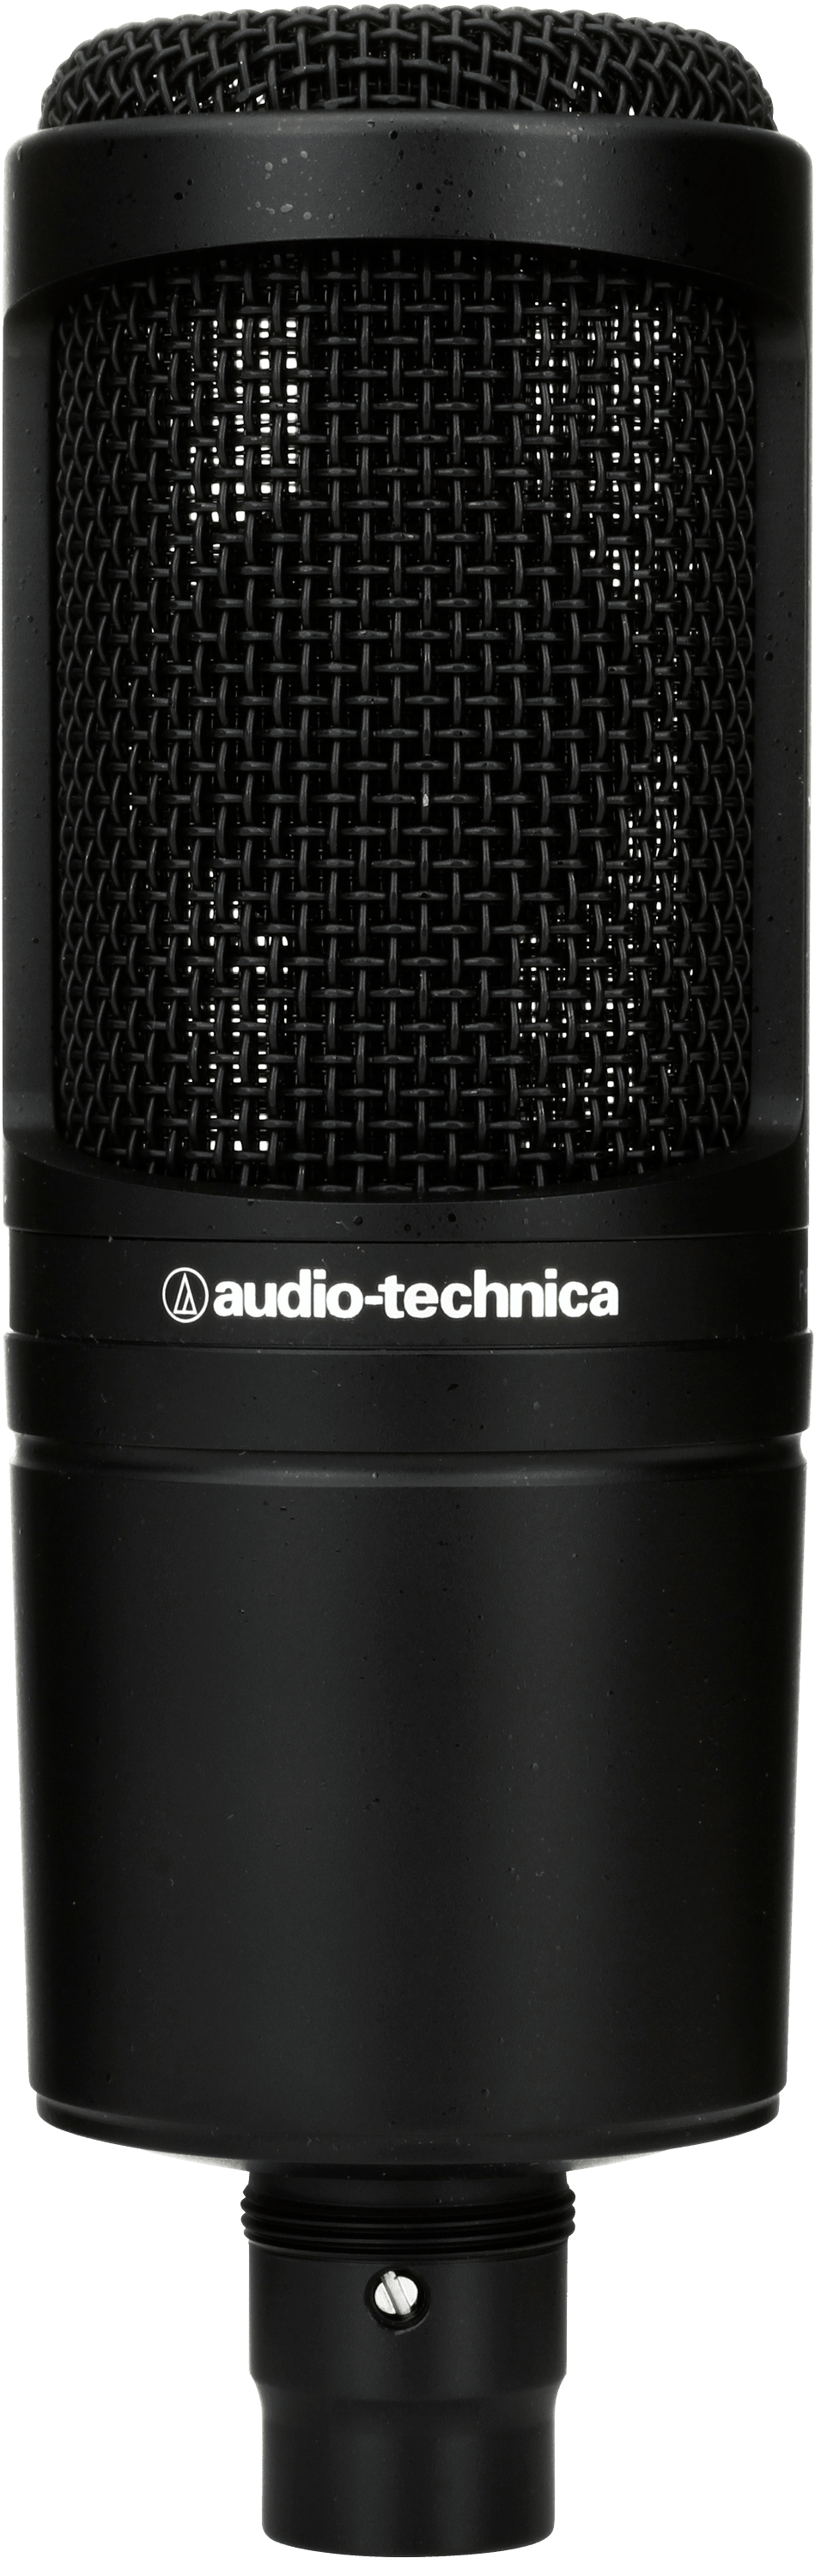 Bundled Item: Audio-Technica AT2020 Cardioid Medium-diaphragm Condenser Microphone